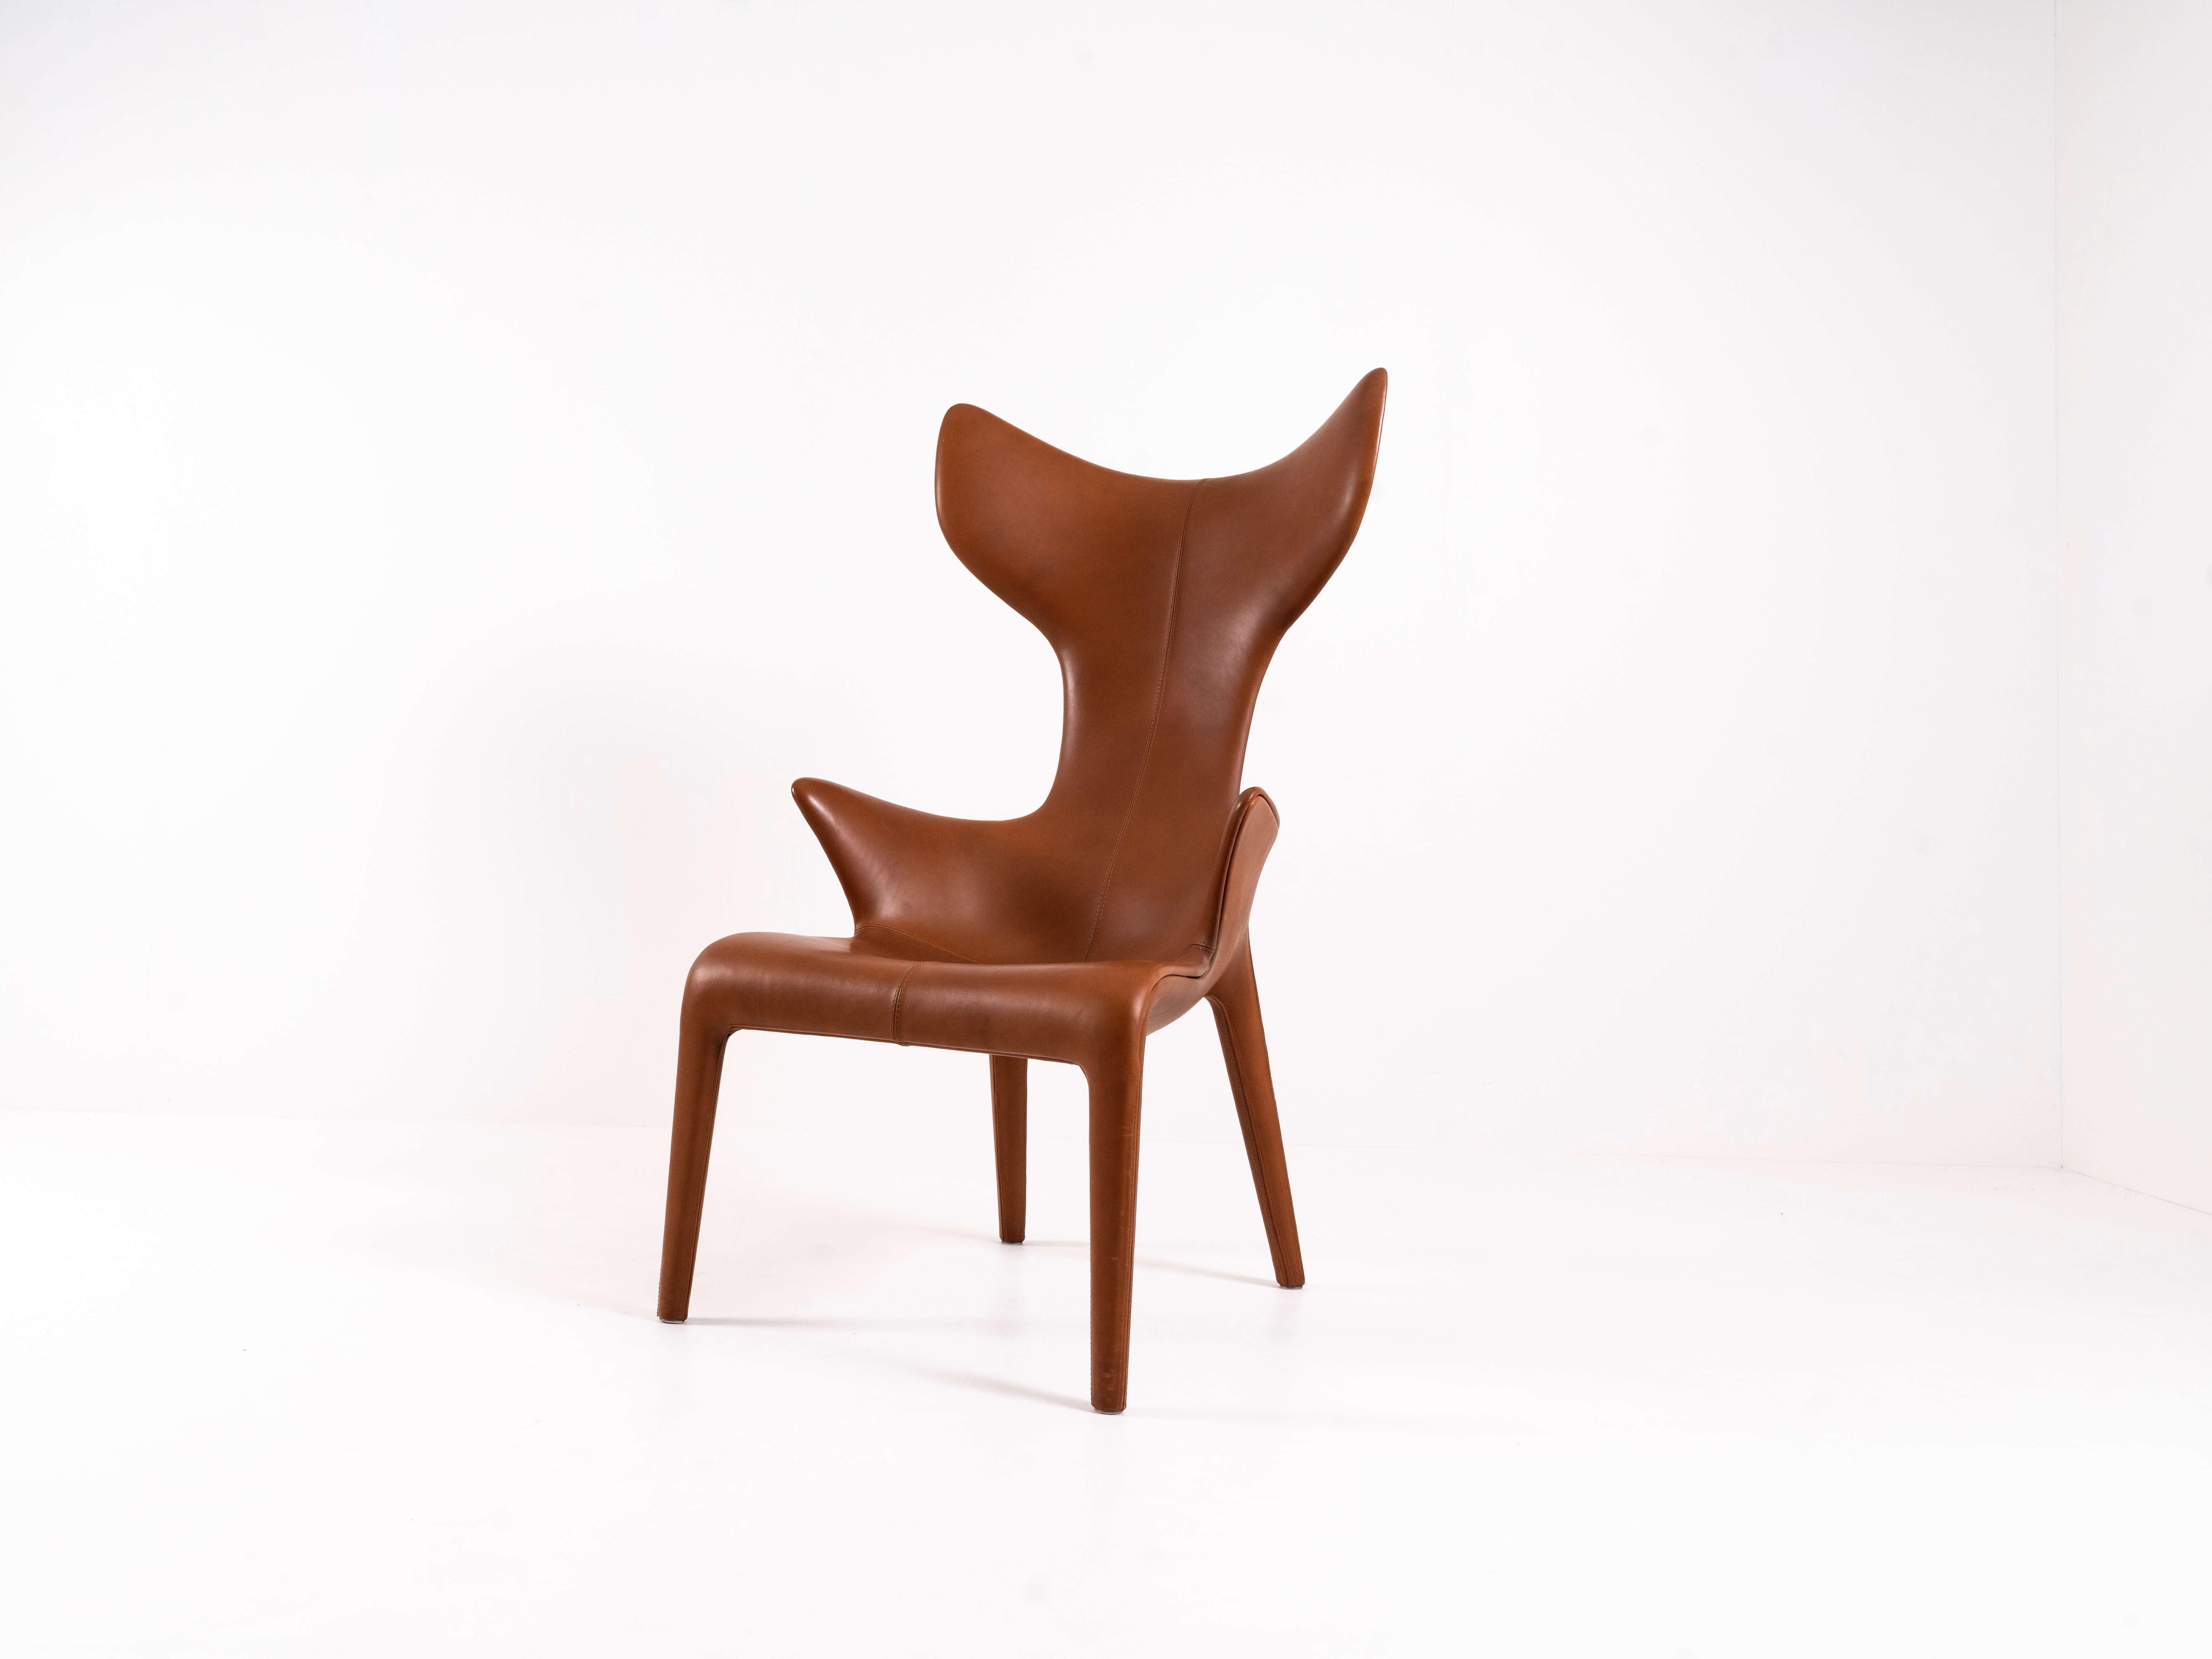 Loungesessel aus Leder 'Lou Read' für Driade. Dieser ikonische Sessel wurde von Philippe Starck und Eugenio Quitllet entworfen. Dieses Modell wurde für das Hotel Monceau in Paris entworfen. Die Form ist sehr organisch. Er hat eine Struktur aus